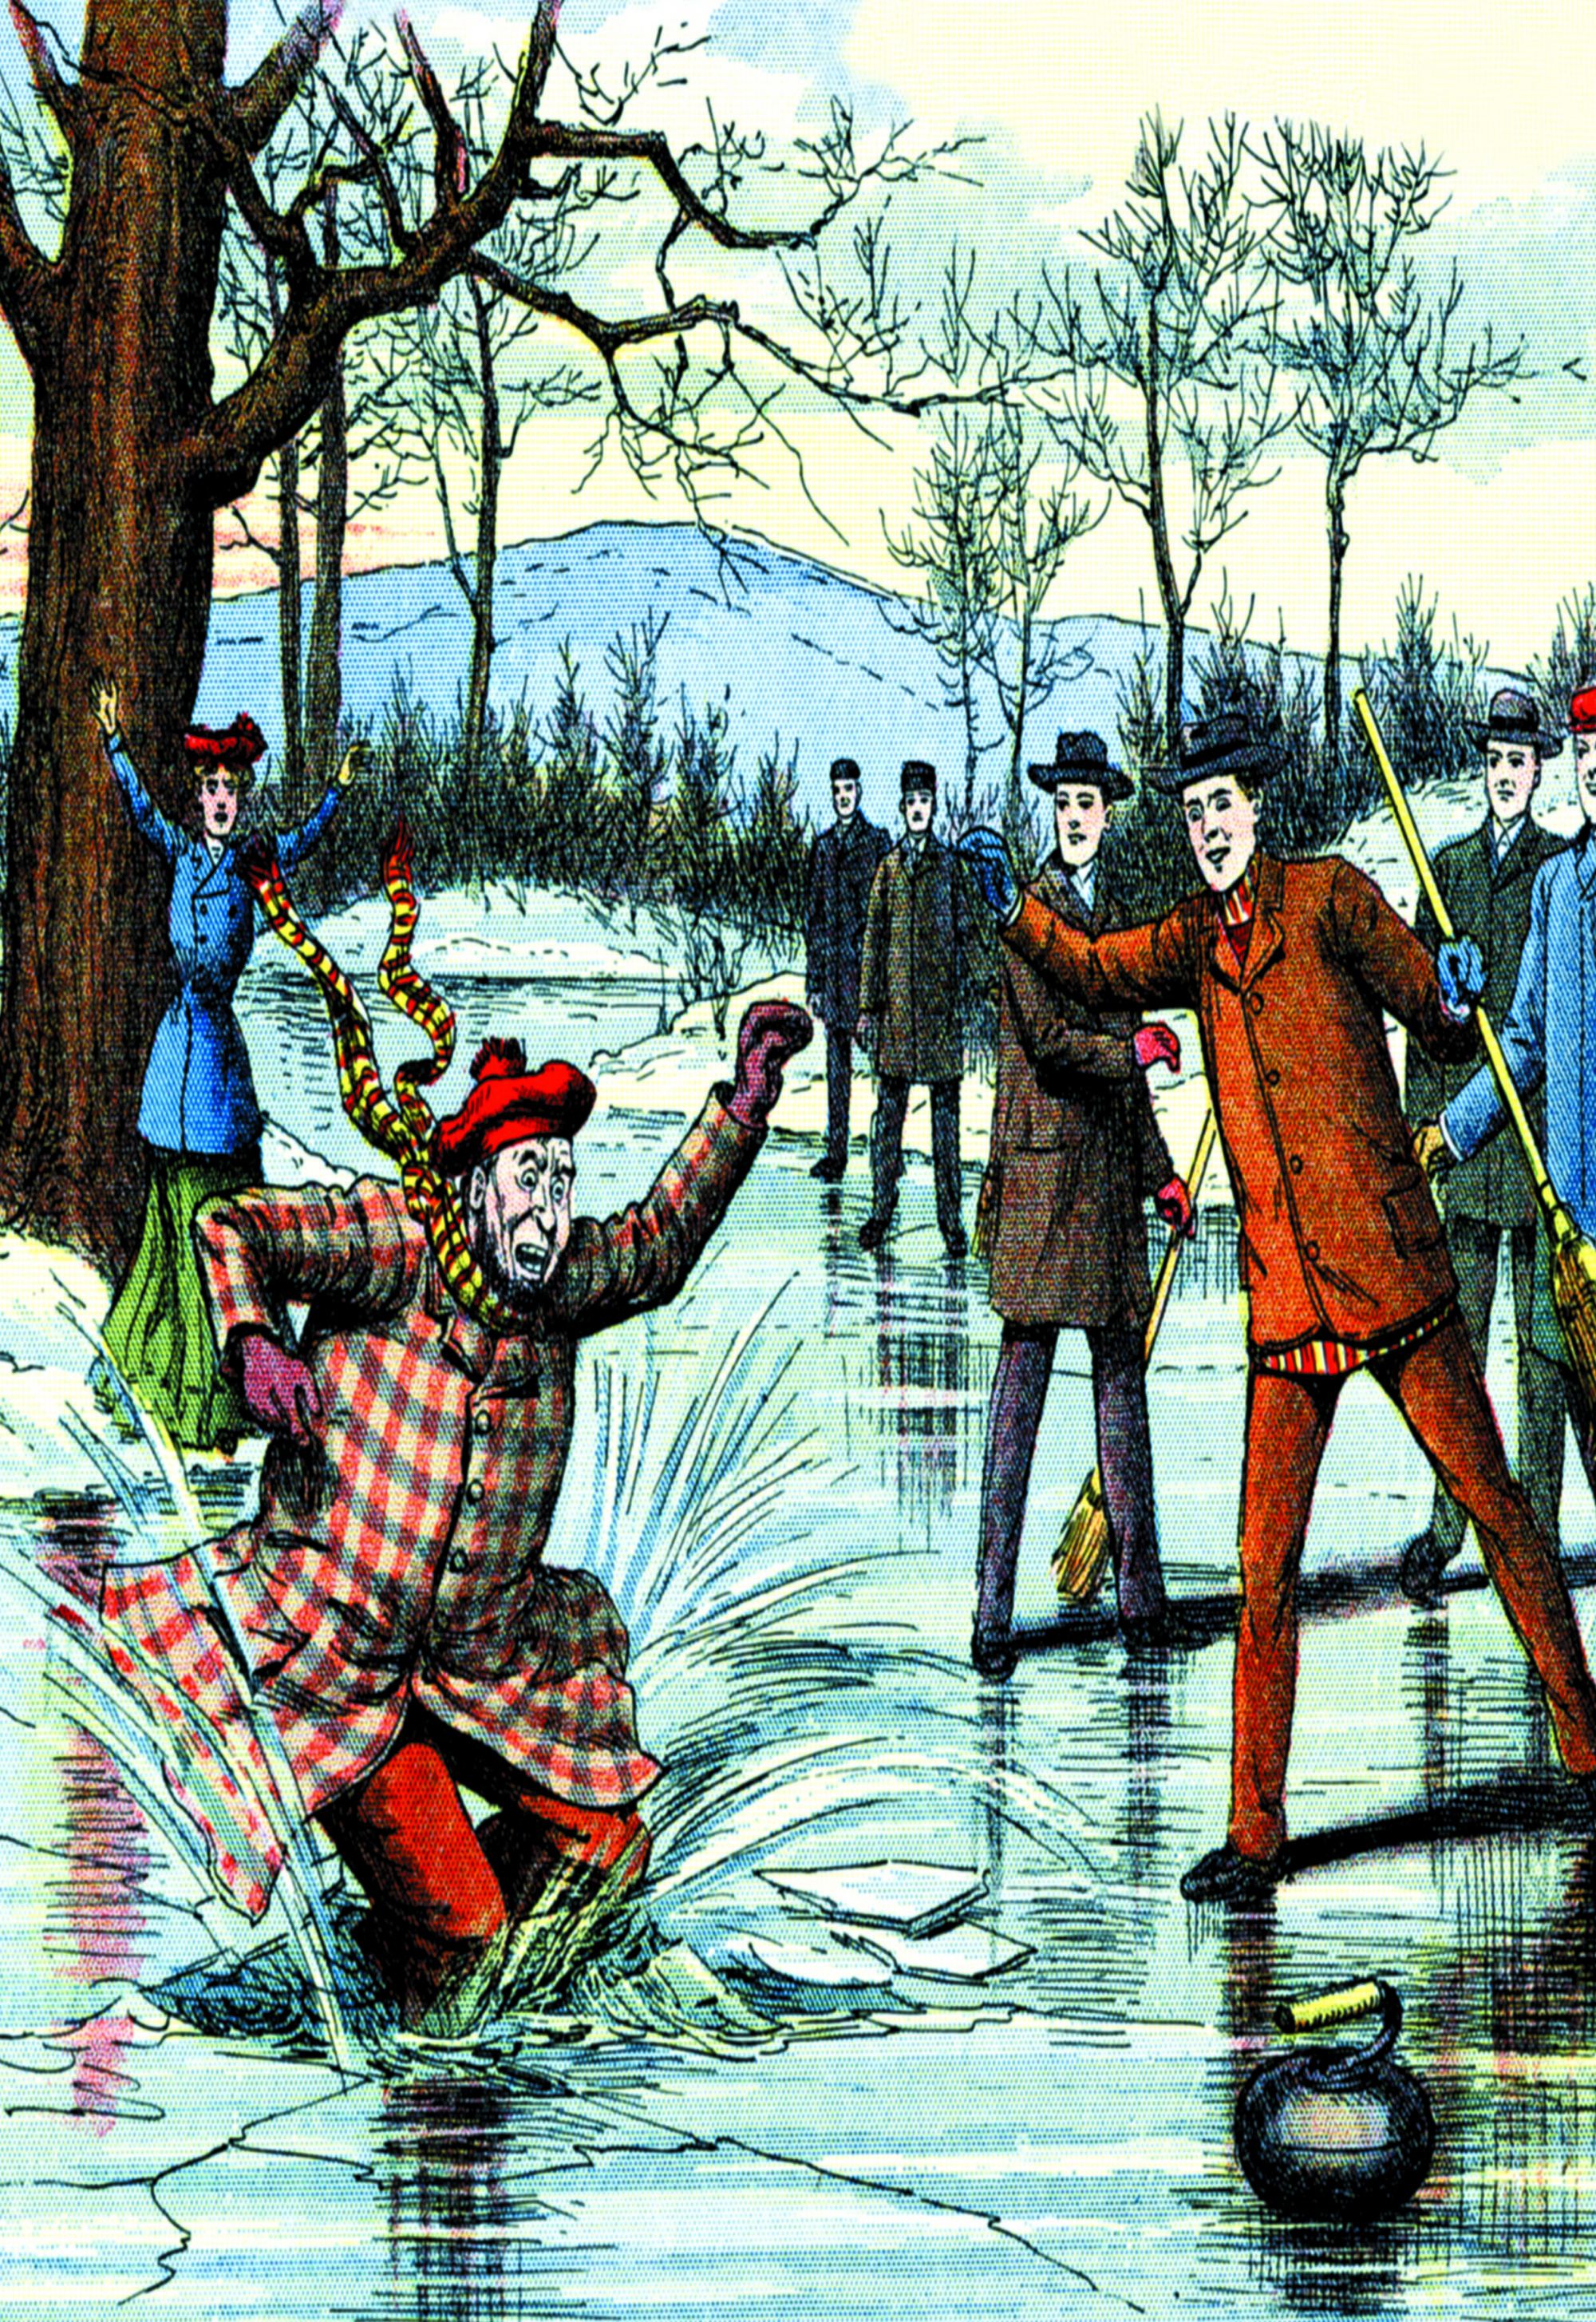 BONUS: Karikatúra z roku 1900: Pád pod ľad pri curlingu.